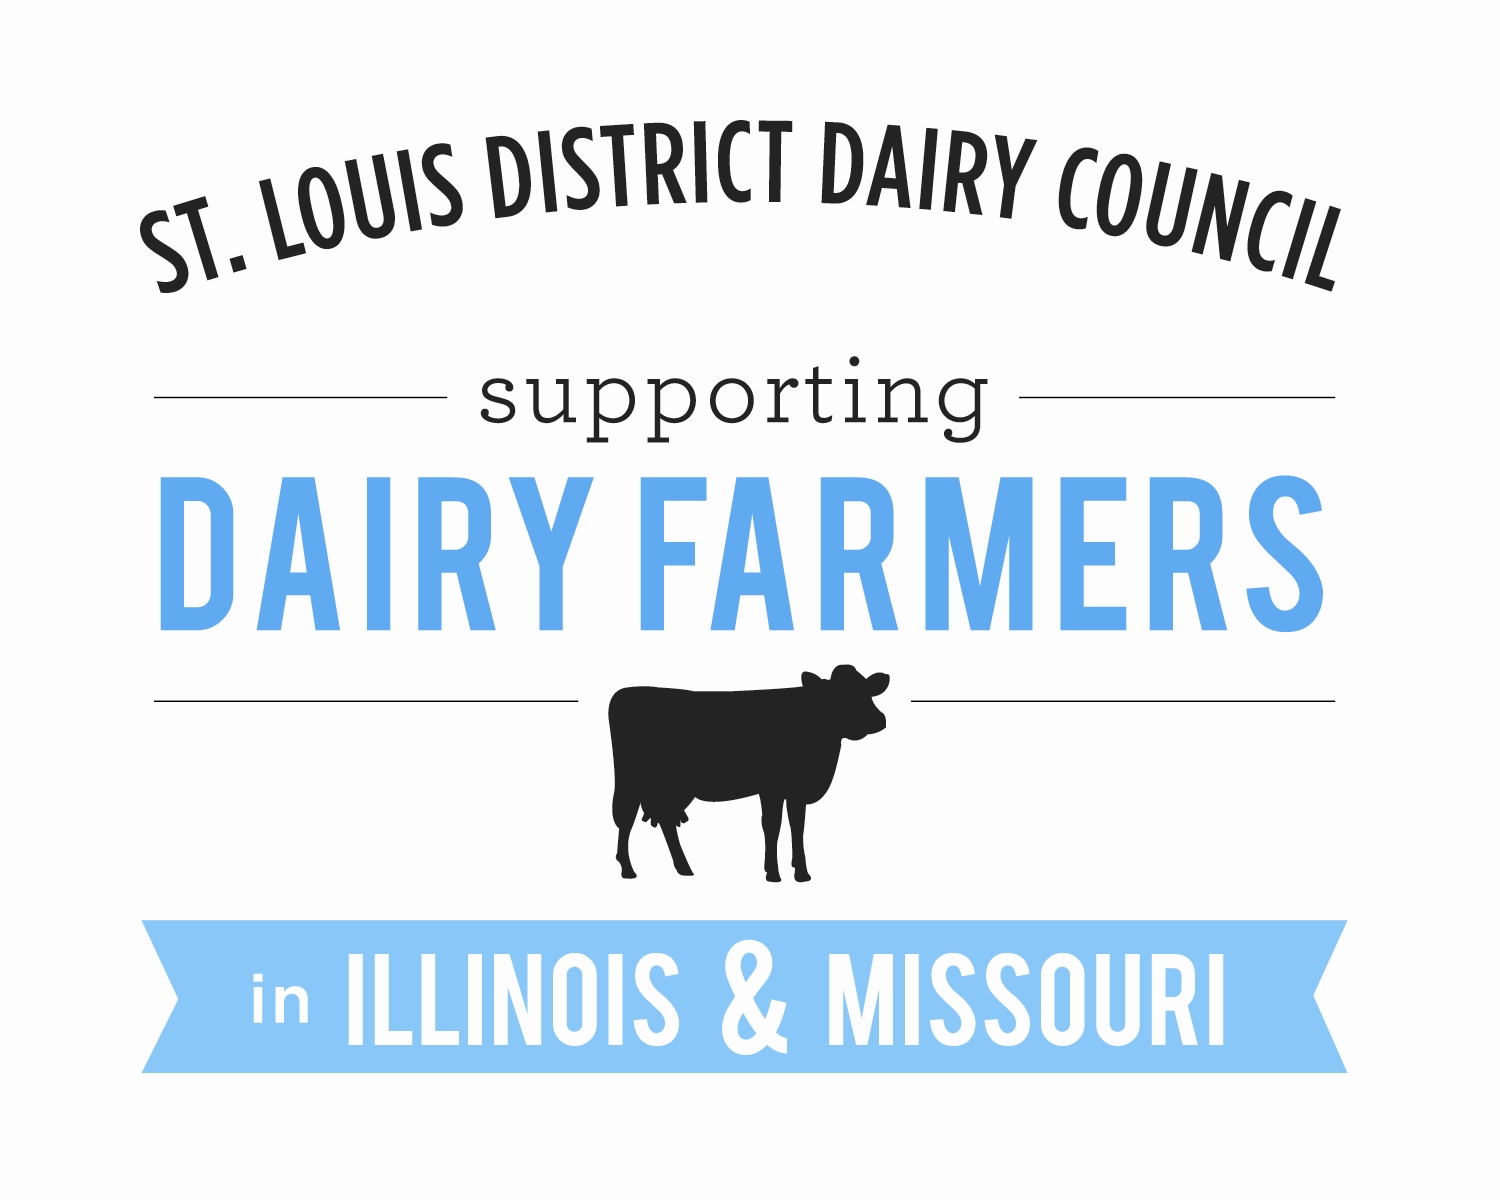 St. Louis District Dairy Council